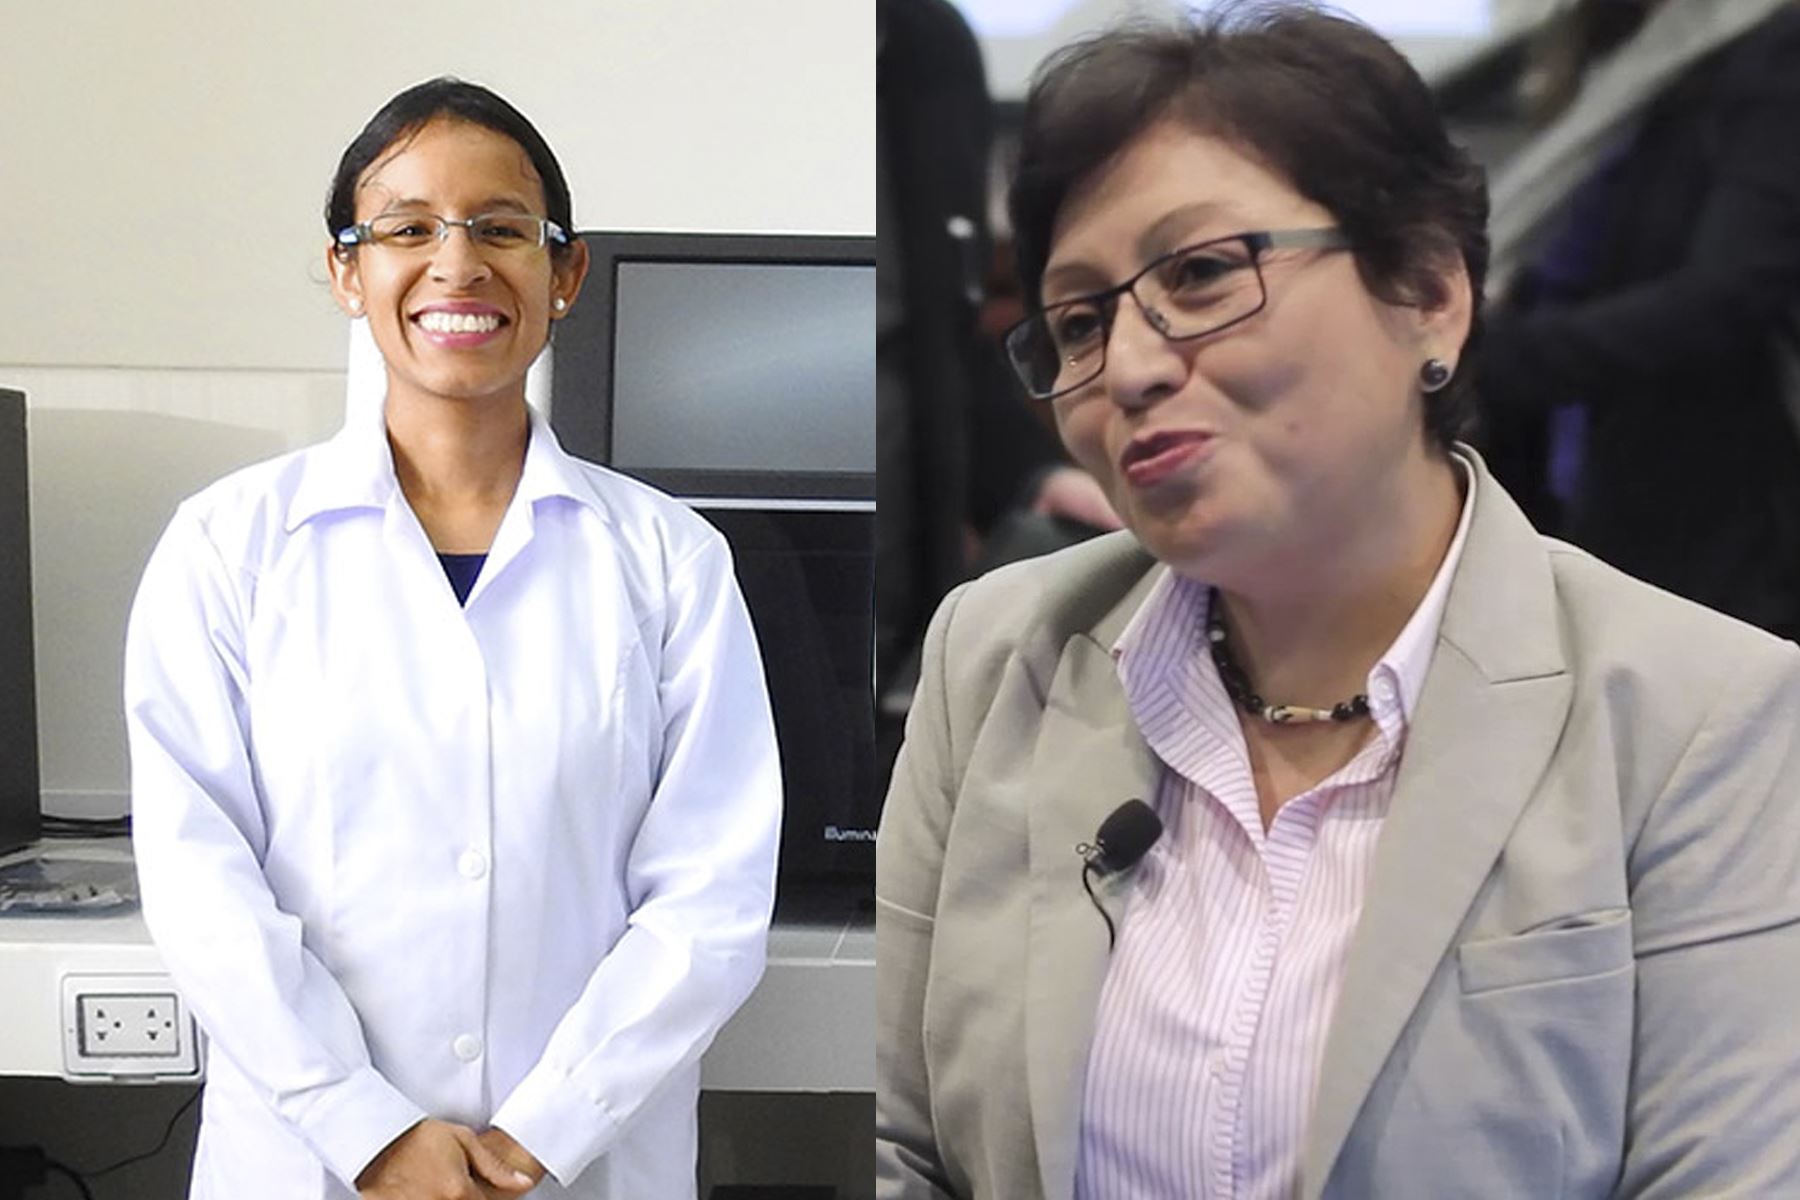 Las científicas María Rivera Chira, doctora en Ciencias, y Martha Calderón Ríos, doctora en Biociencia y Biotecnología, fueron anunciadas como las ganadoras del premio.